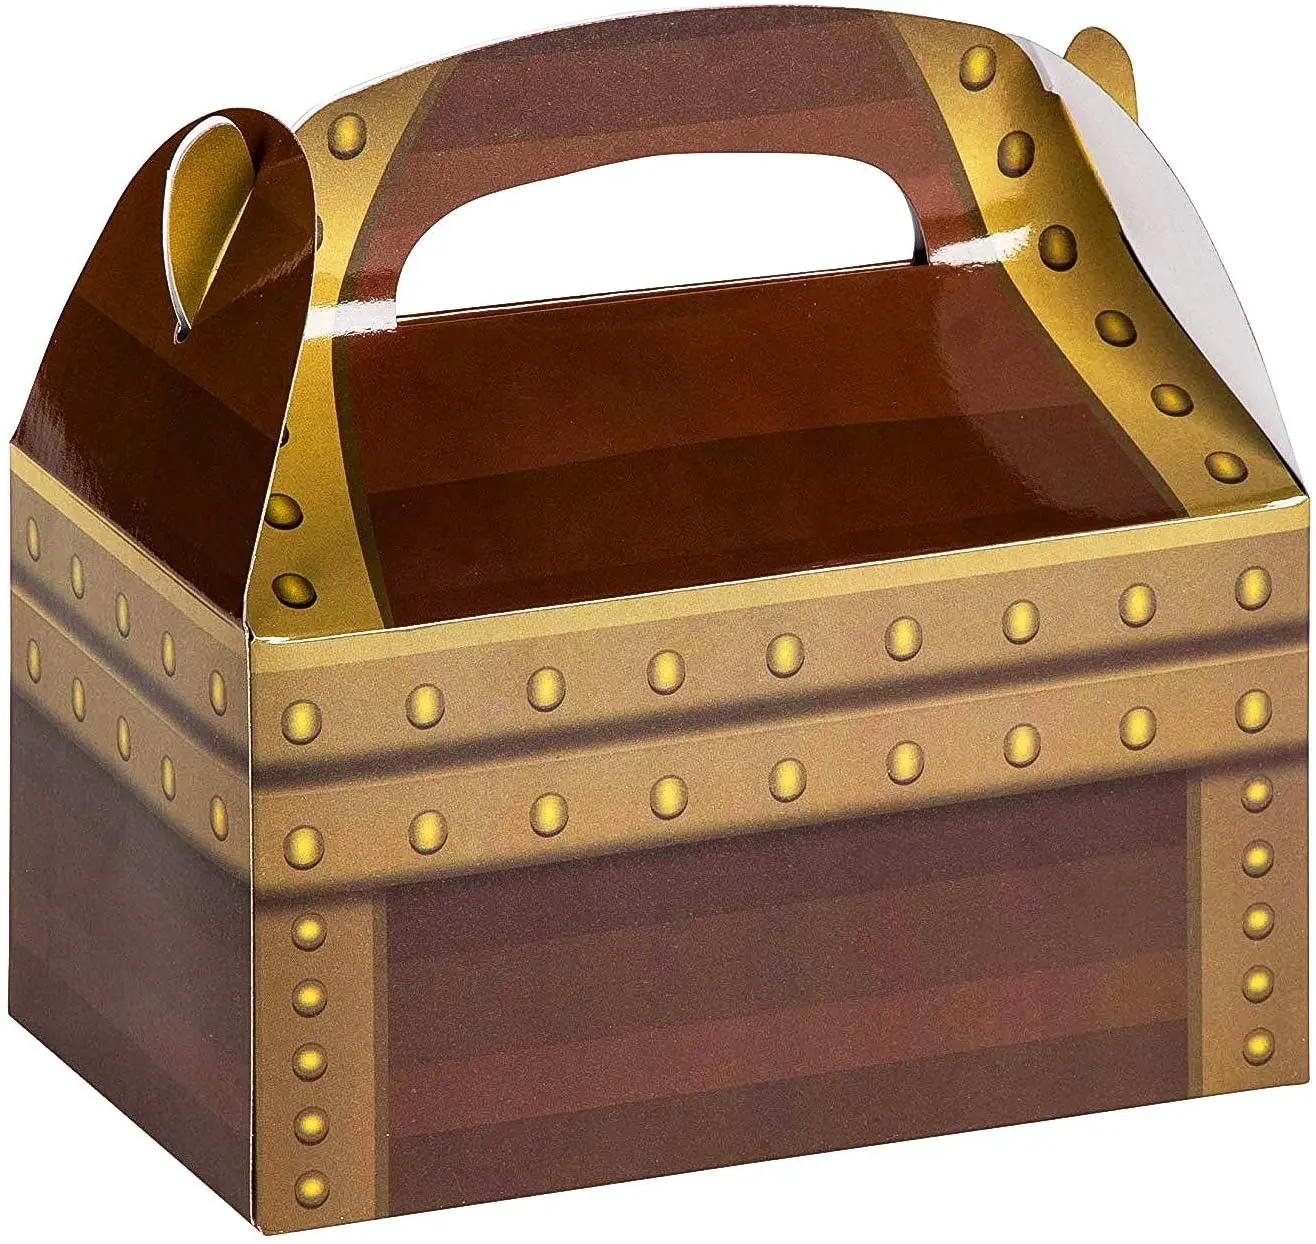 Cajas de recuerdo de fiesta con tema de pirata de cumpleaños, Cofre del Tesoro, diseño de botín, caja de pirata de papel